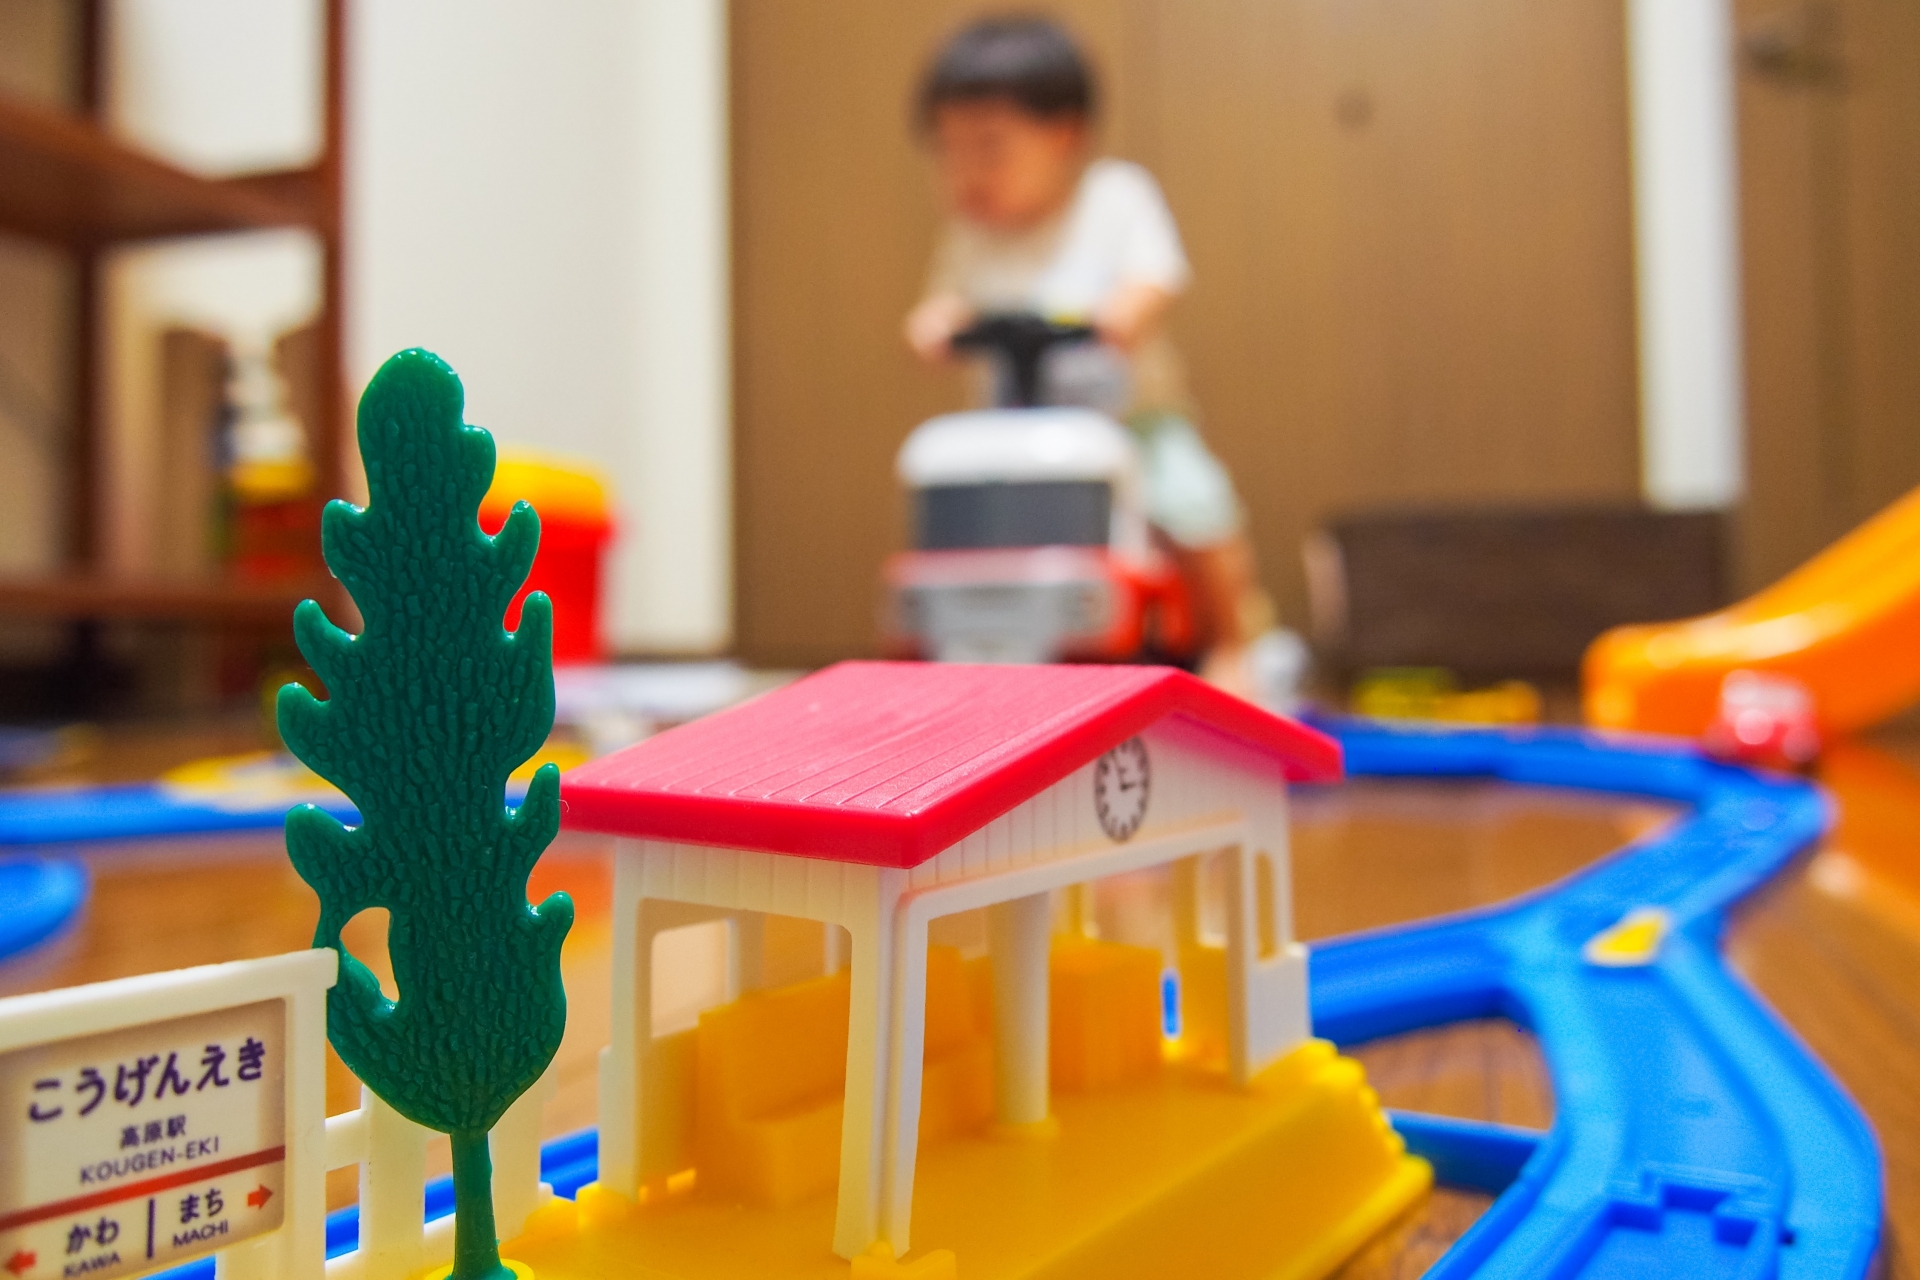 踏切おもちゃで電車遊びがもっと楽しく プラレール 木製 レゴなど人気アイテム大集合 Hugkum はぐくむ